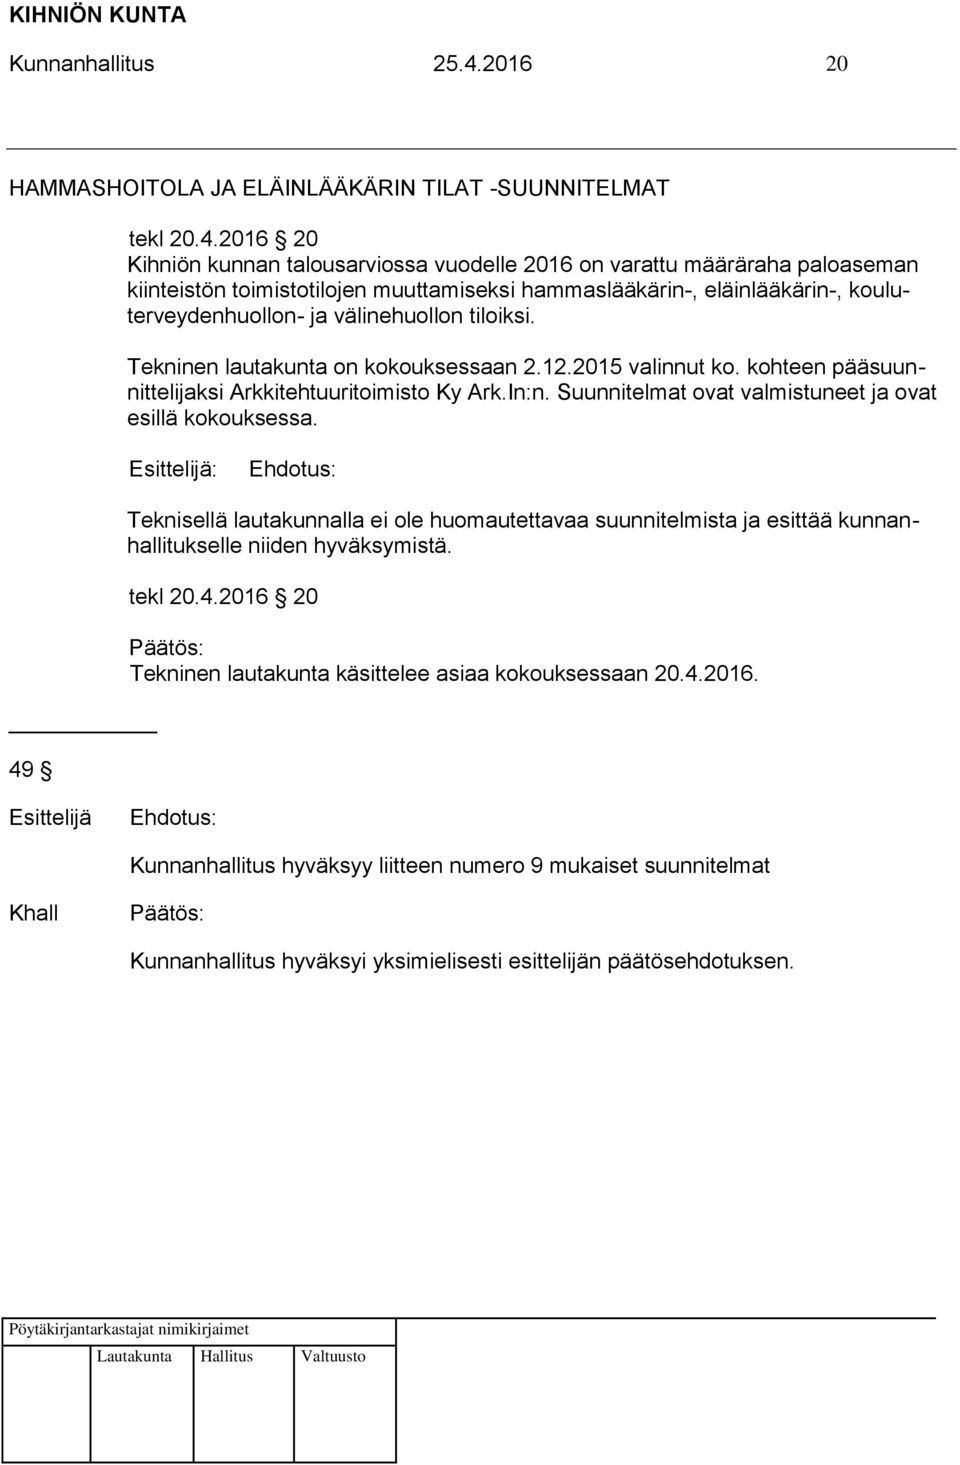 2016 20 Kihniön kunnan talousarviossa vuodelle 2016 on varattu määräraha paloaseman kiinteistön toimistotilojen muuttamiseksi hammaslääkärin-, eläinlääkärin-, kouluterveydenhuollon- ja